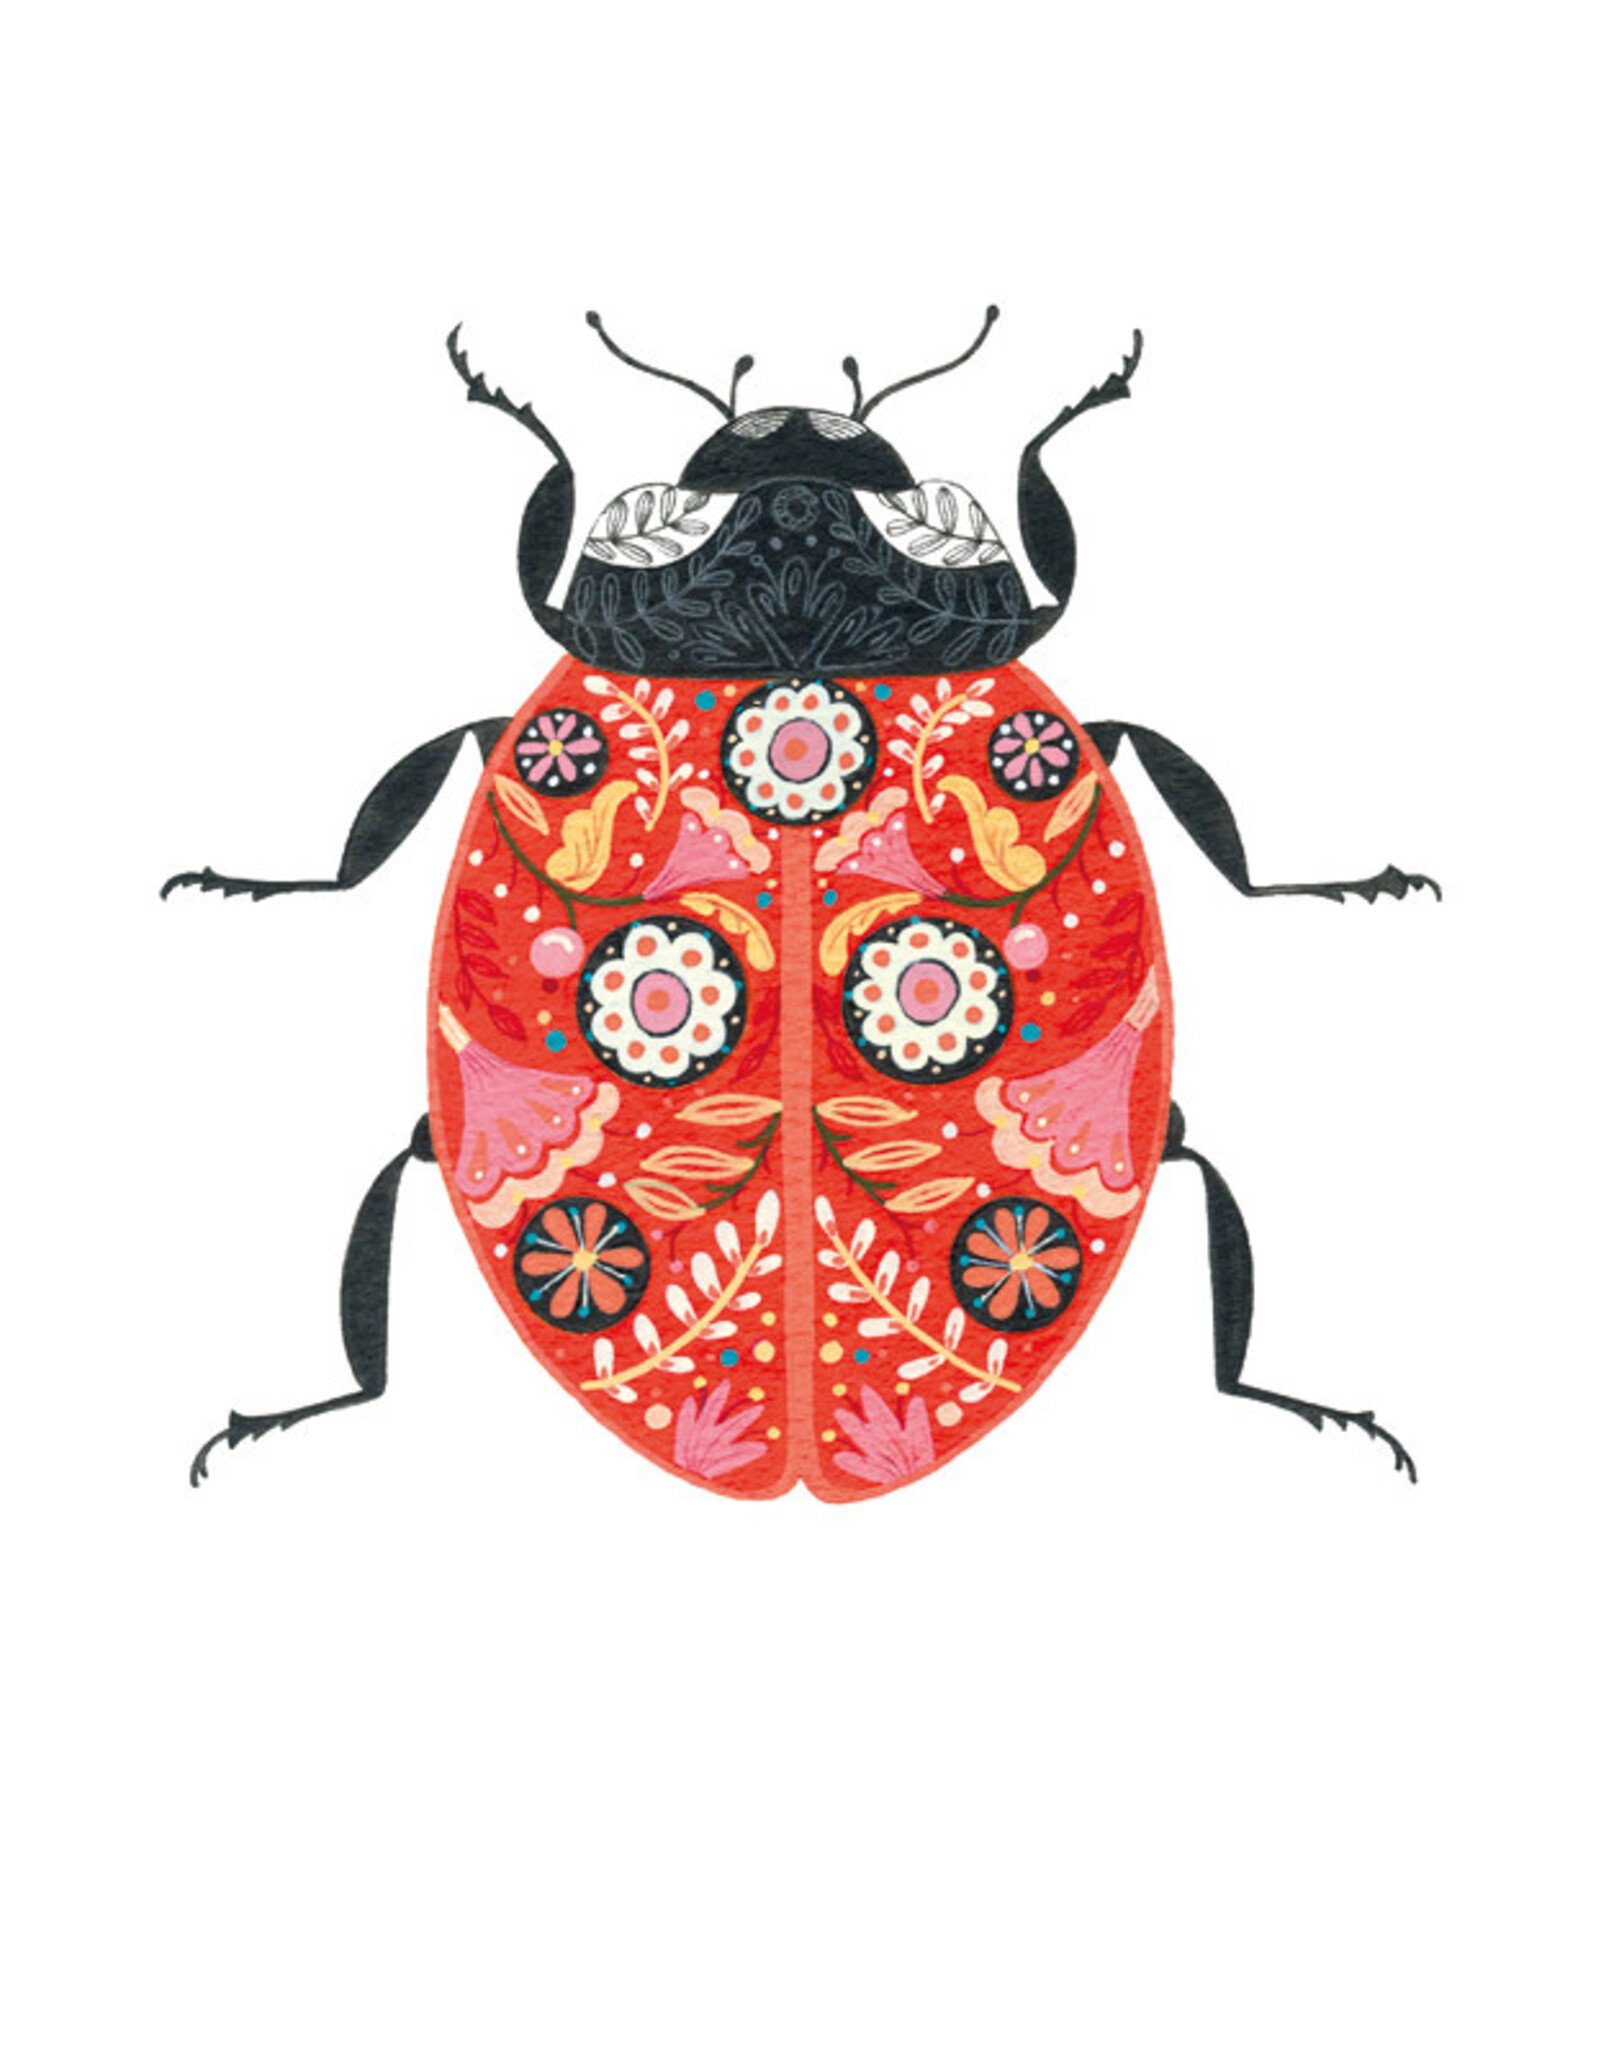 Just Because - Ladybug